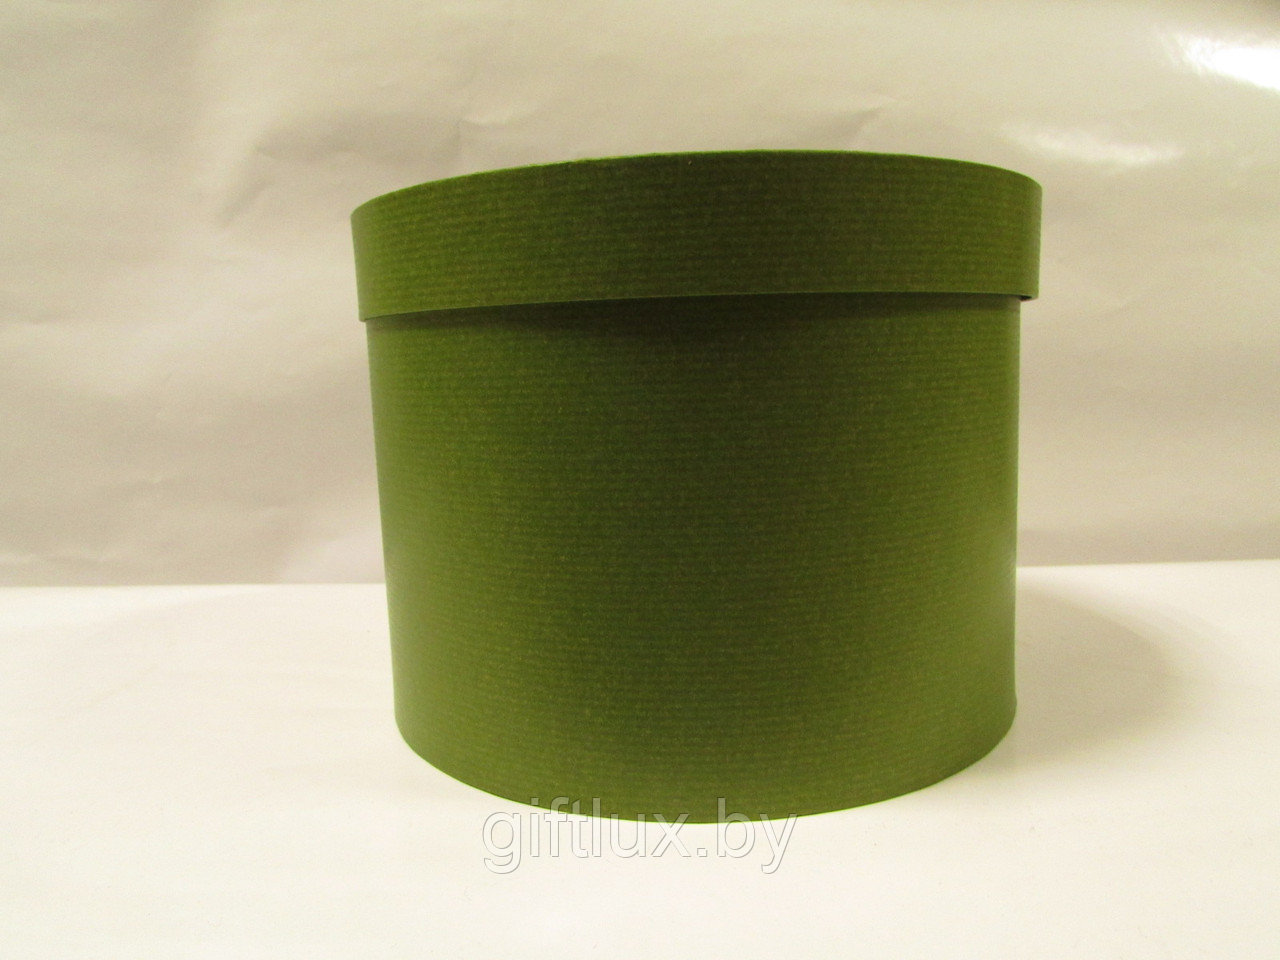 Коробка подарочная круглая "Однотон", 20*15 см зеленый